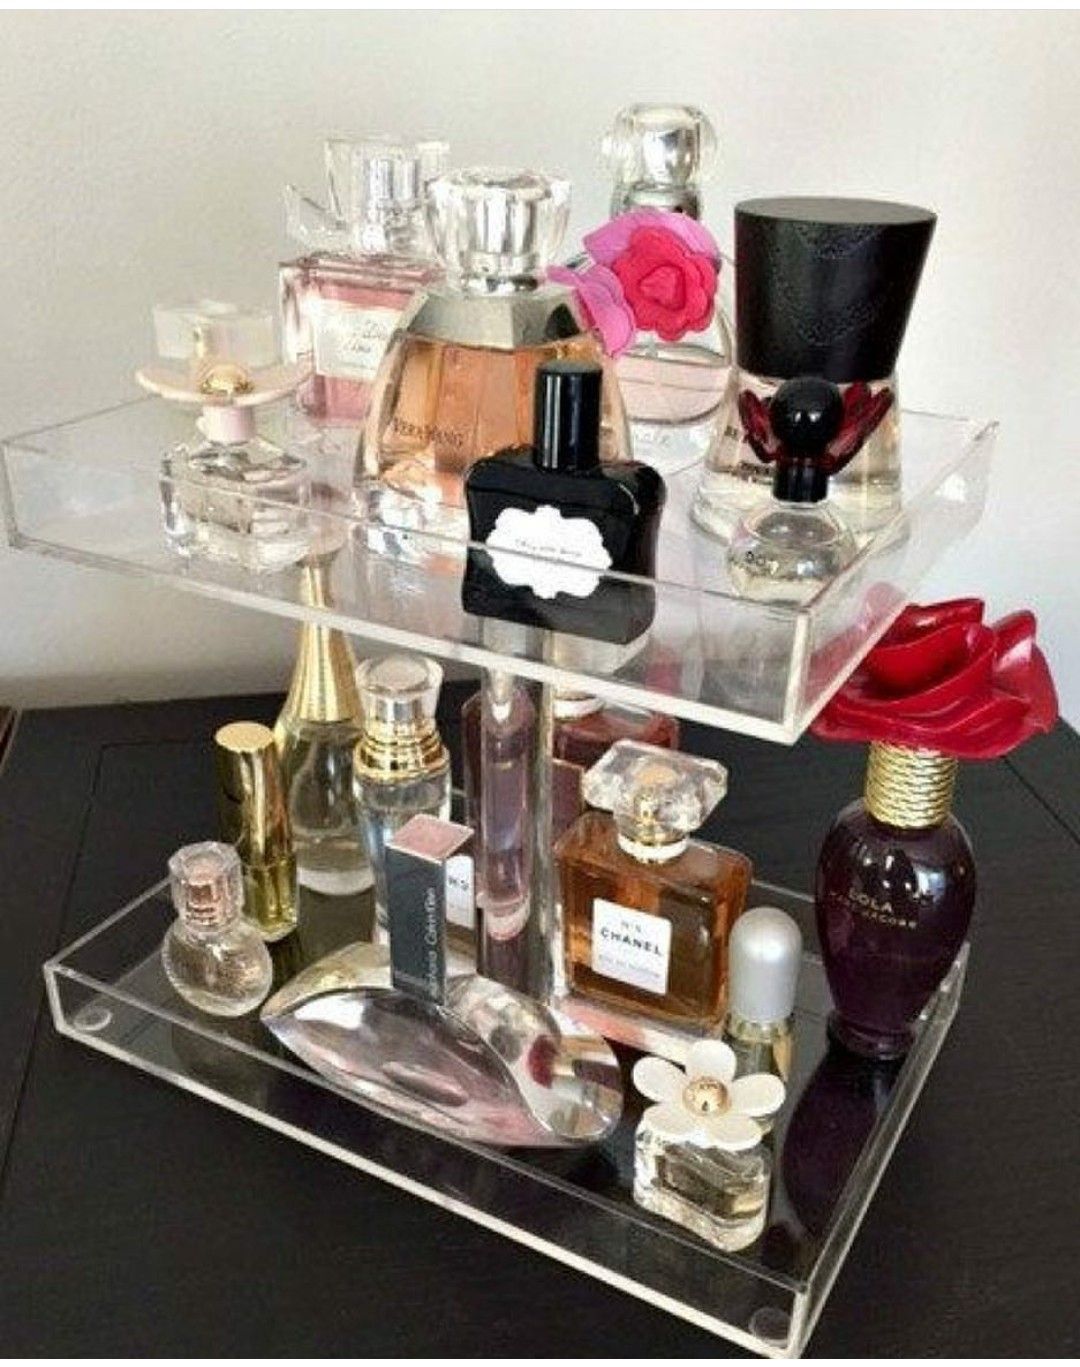 Срок годности парфюмерных ароматов: как продлить и сохранить